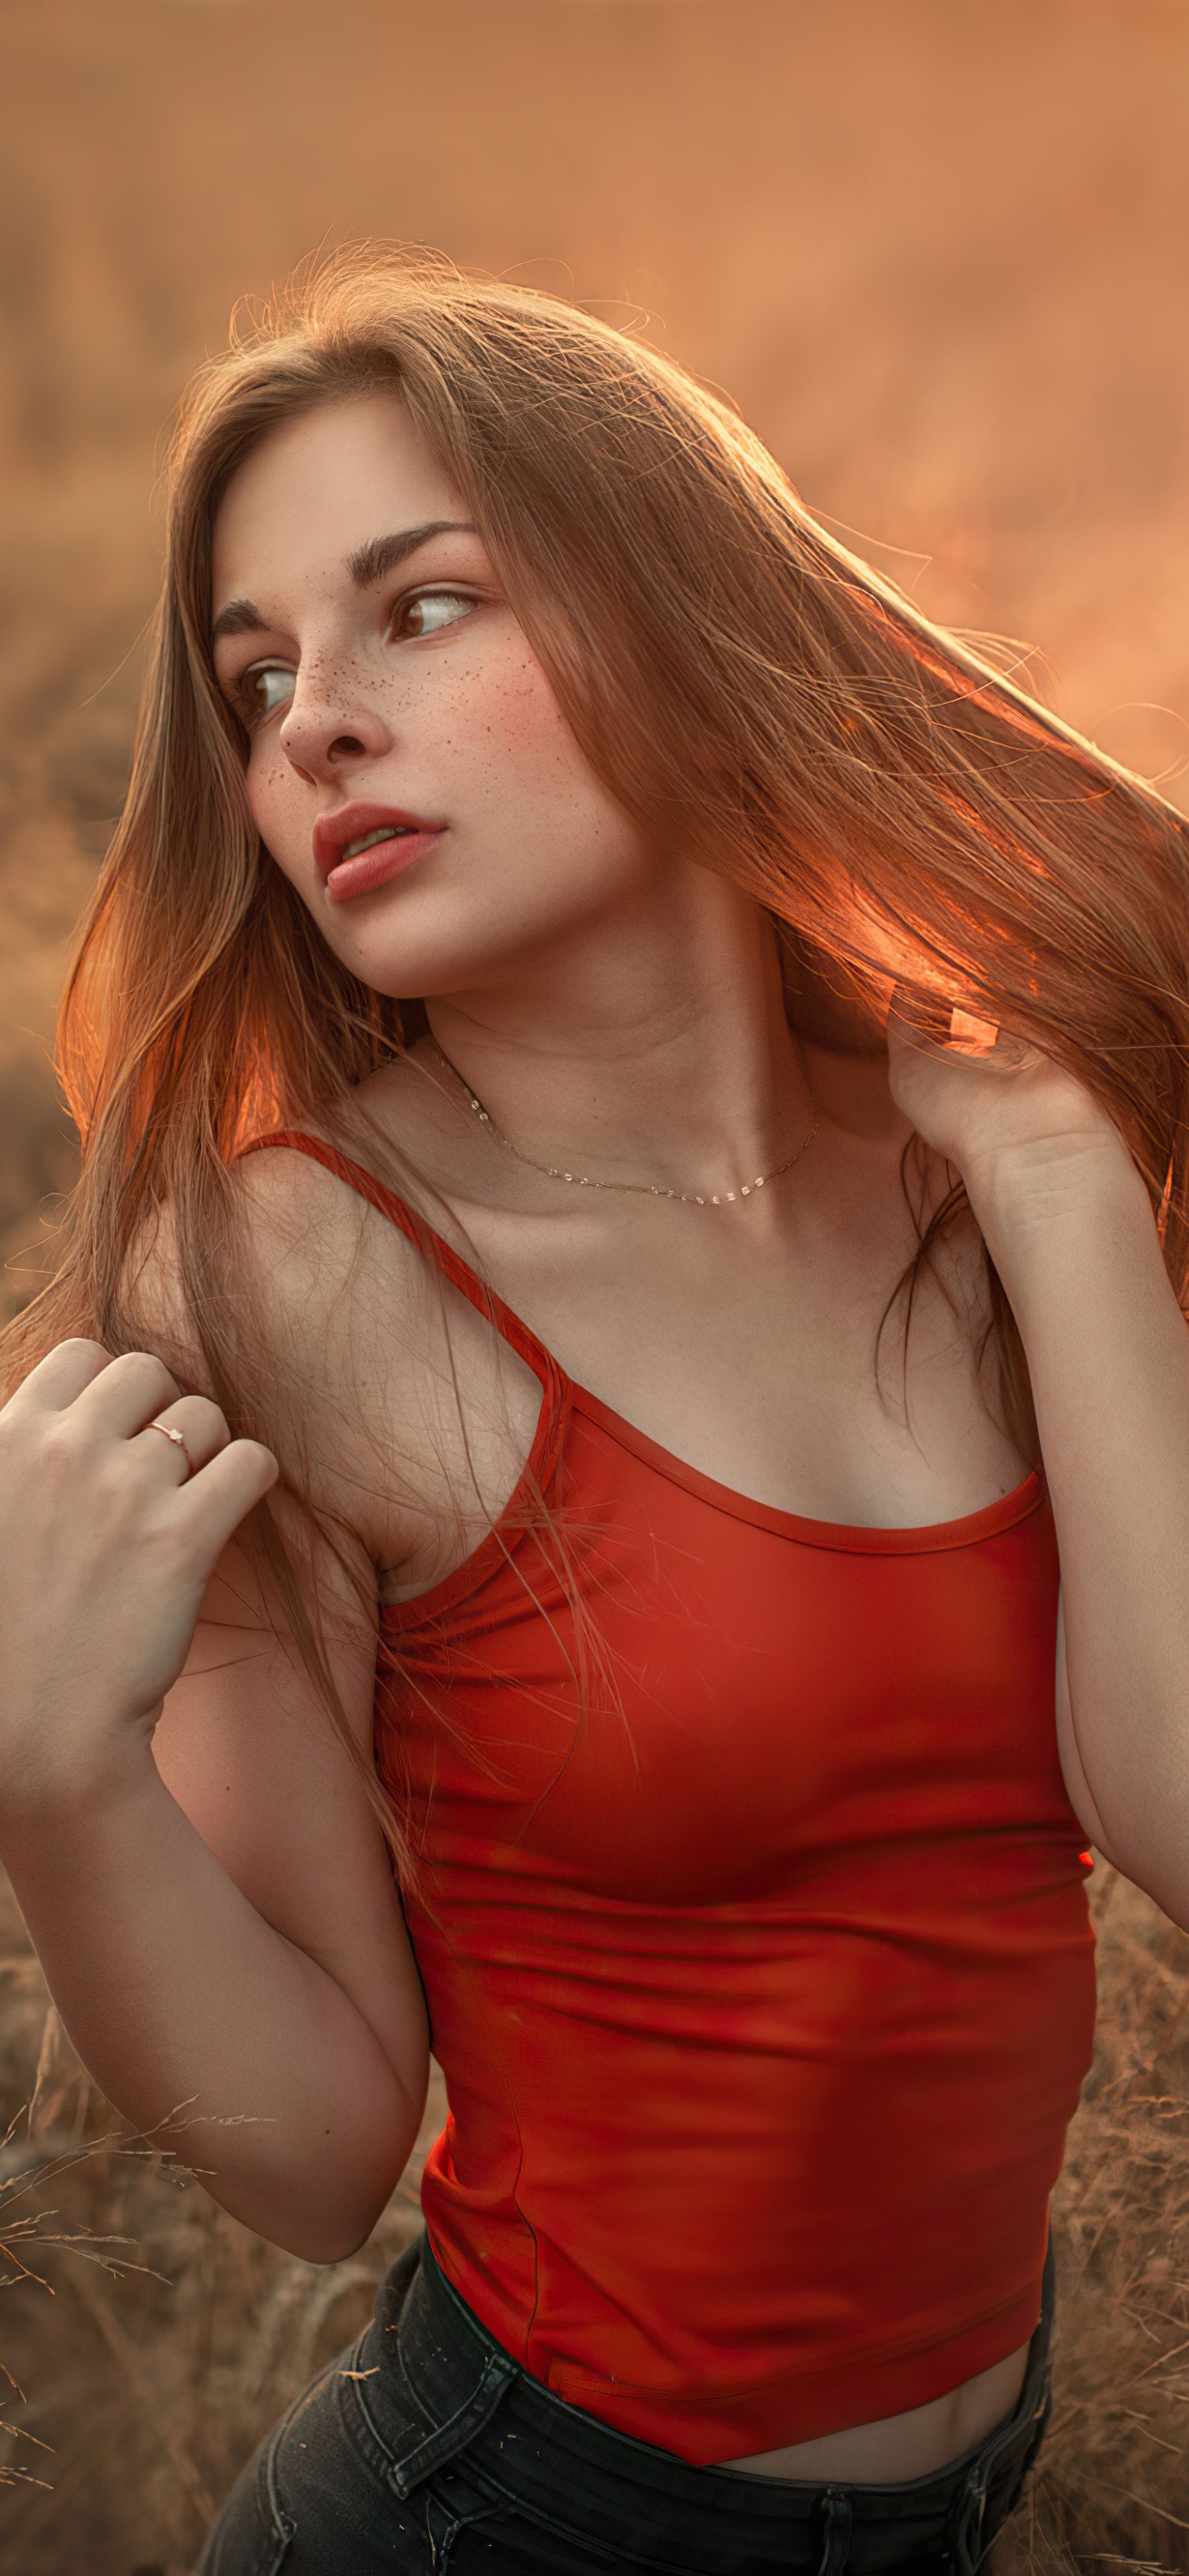 рыжая девушка с веснушками, стройная красавица в поле